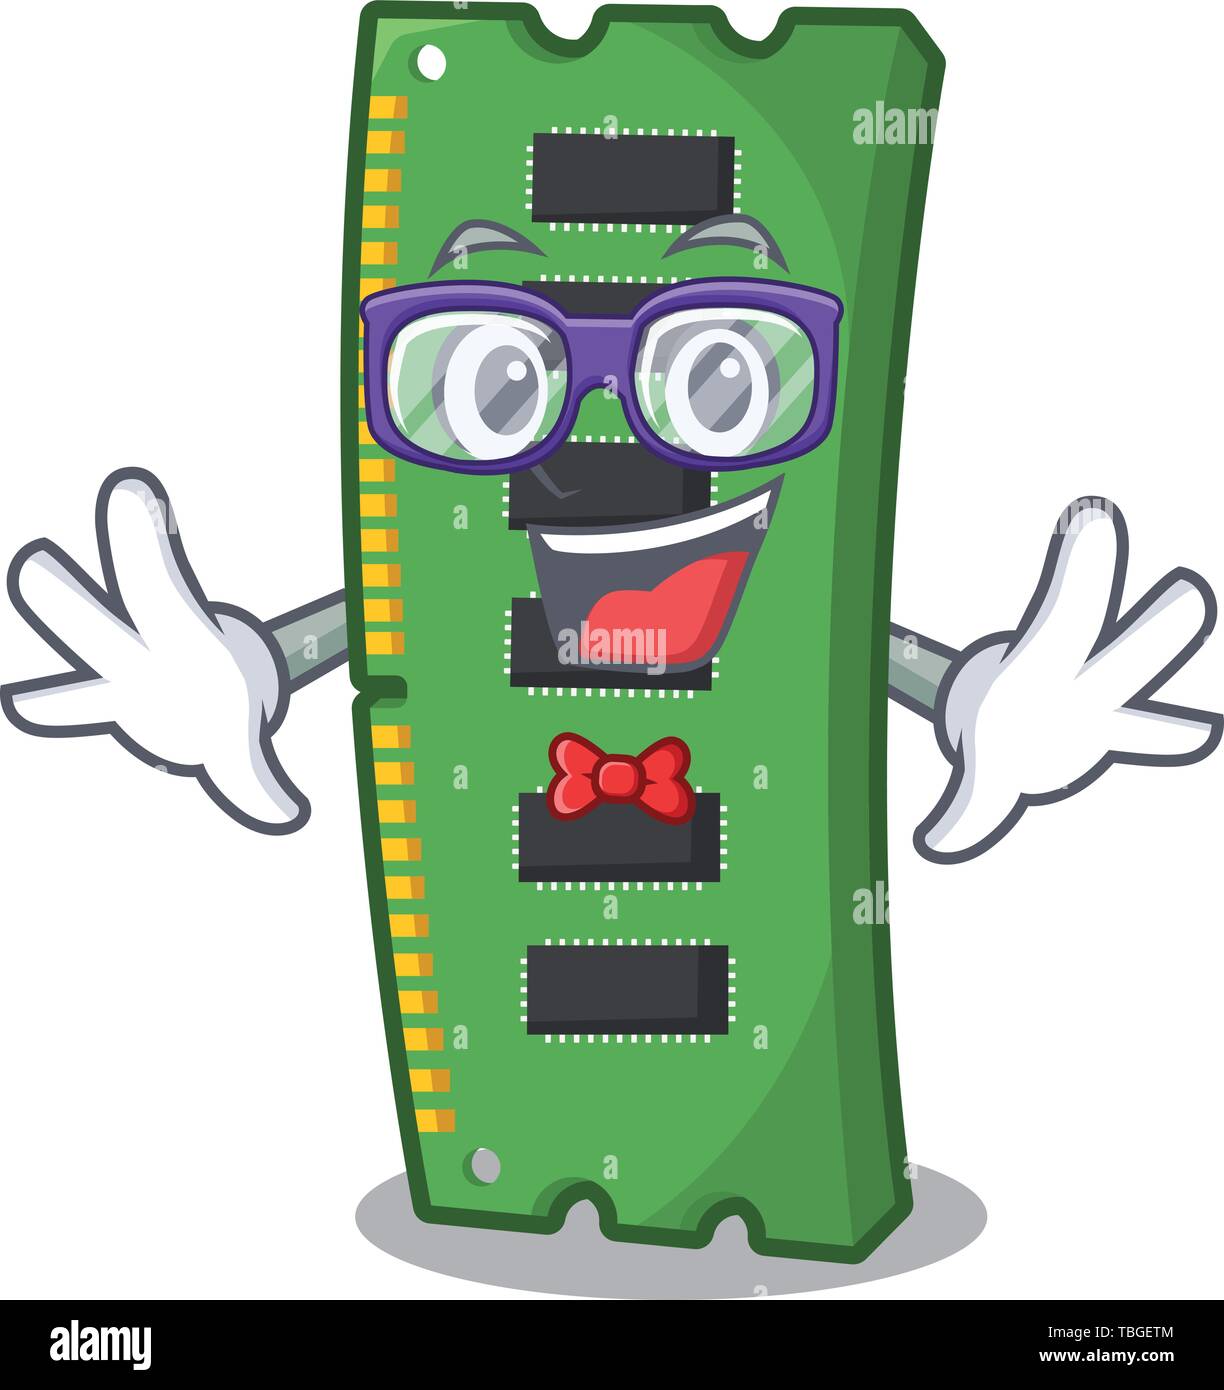 Geek RAM memory card the mascot shape Stock Vector